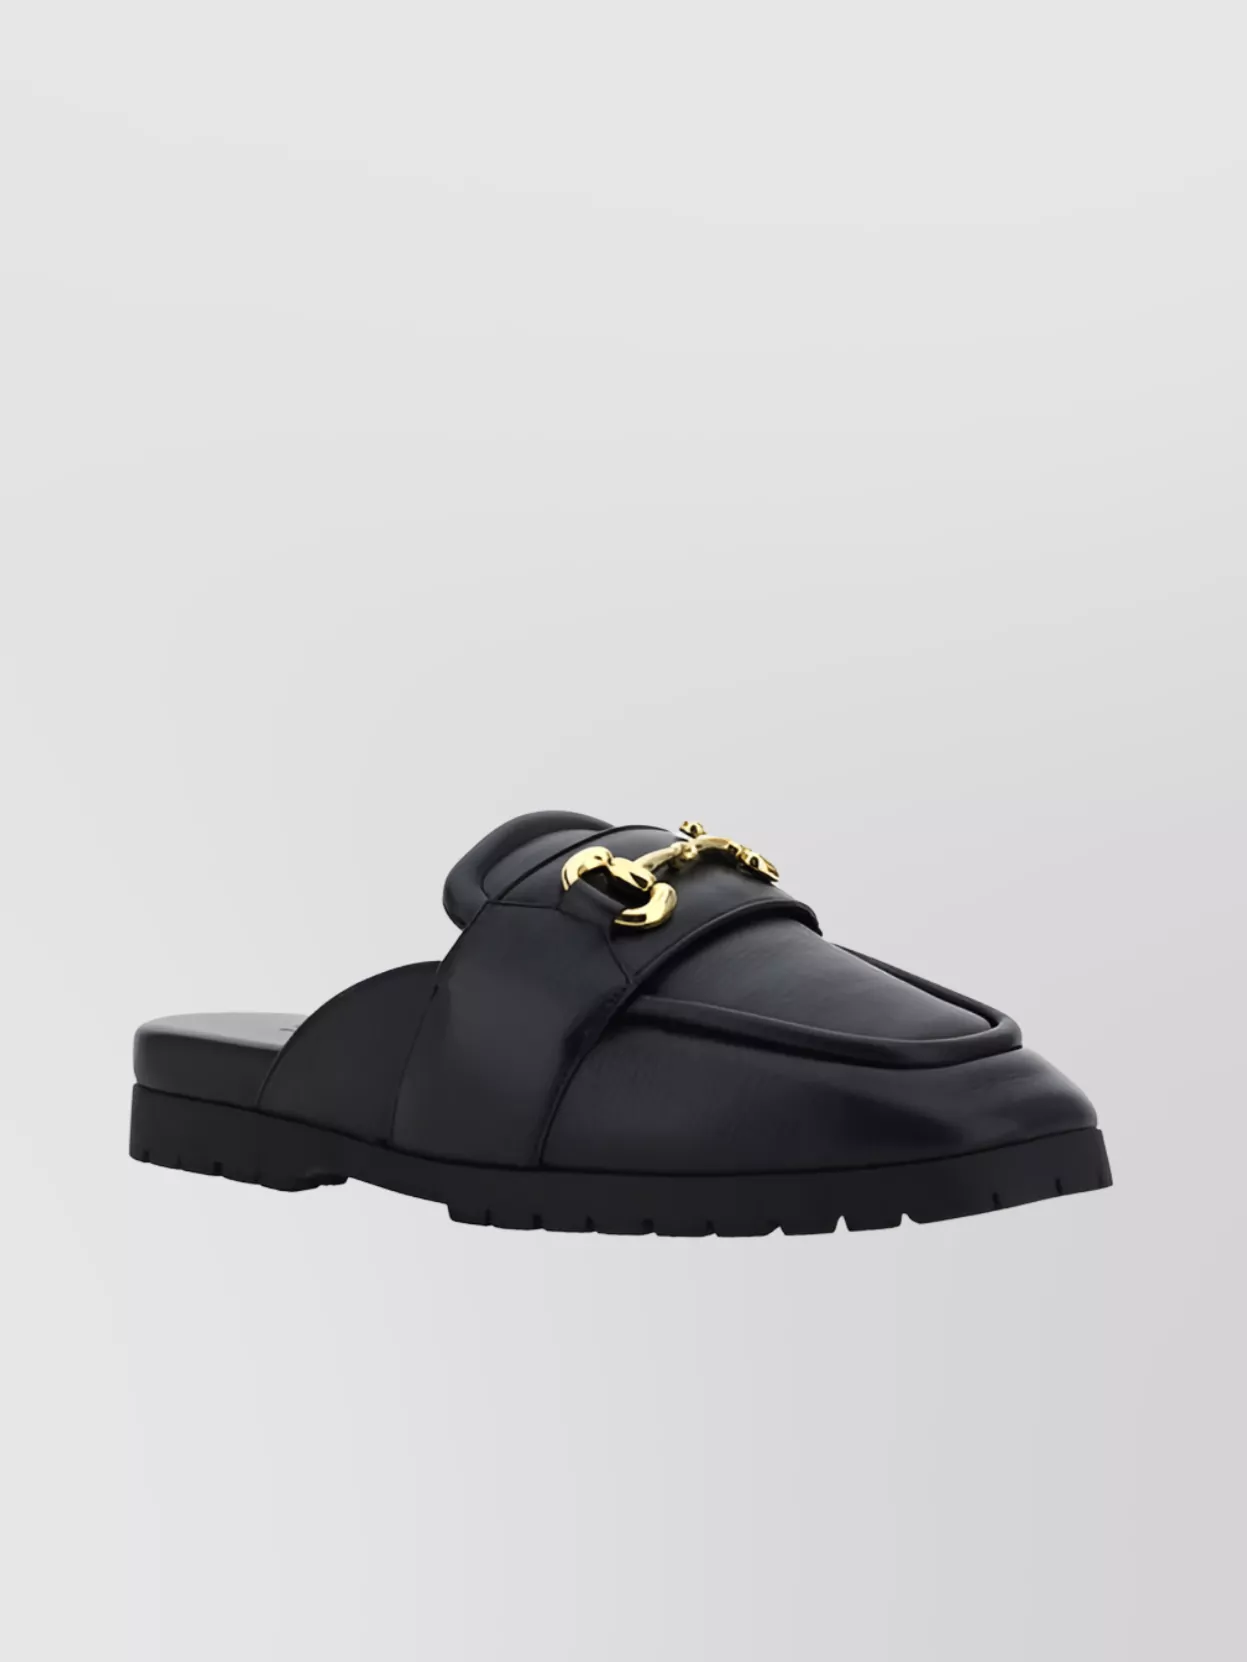 Gucci Horsebit Calfskin Flat Sole Loafers In Black